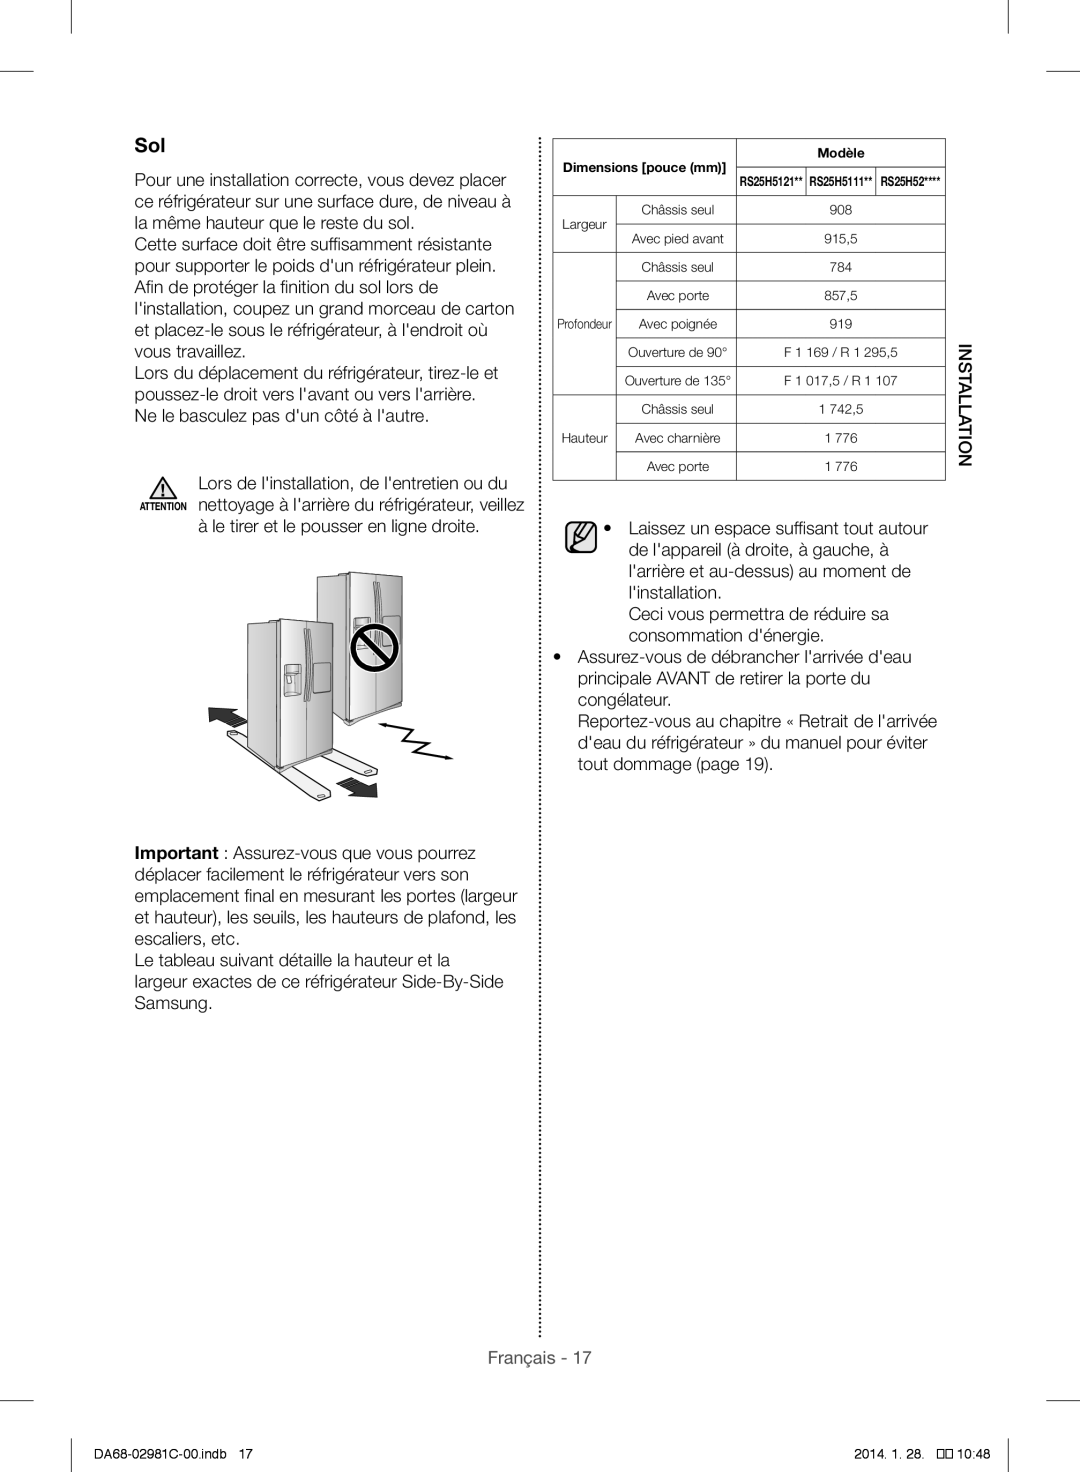 Samsung RS25H5223SL/ZA manual Sol, Dimensions pouce mm Modèle 